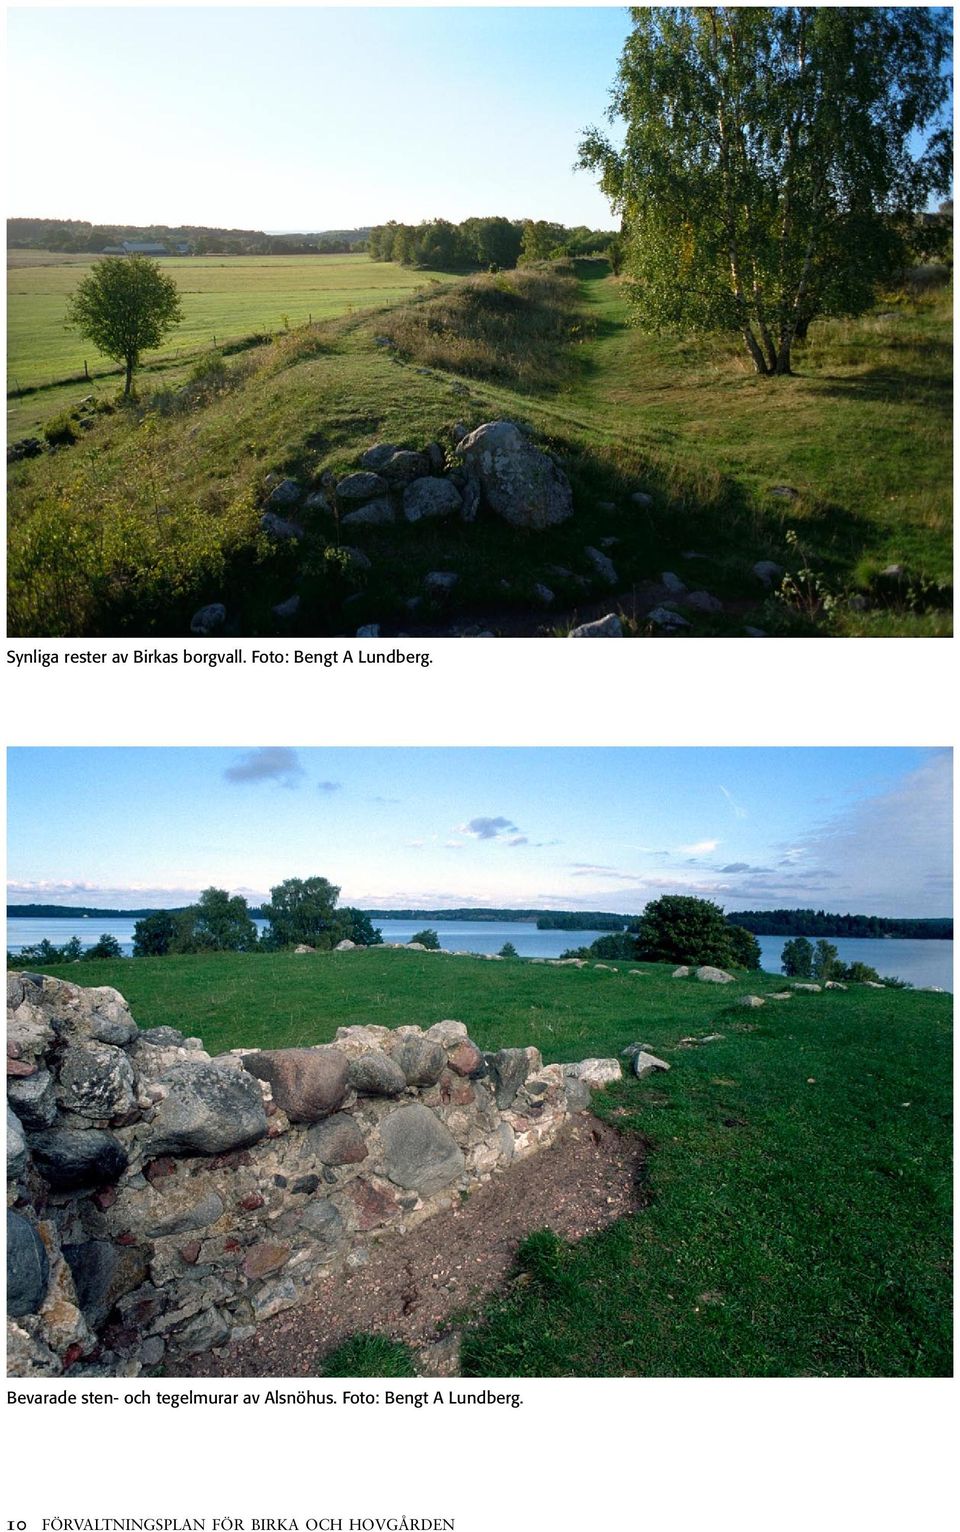 Bevarade sten- och tegelmurar av Alsnöhus.